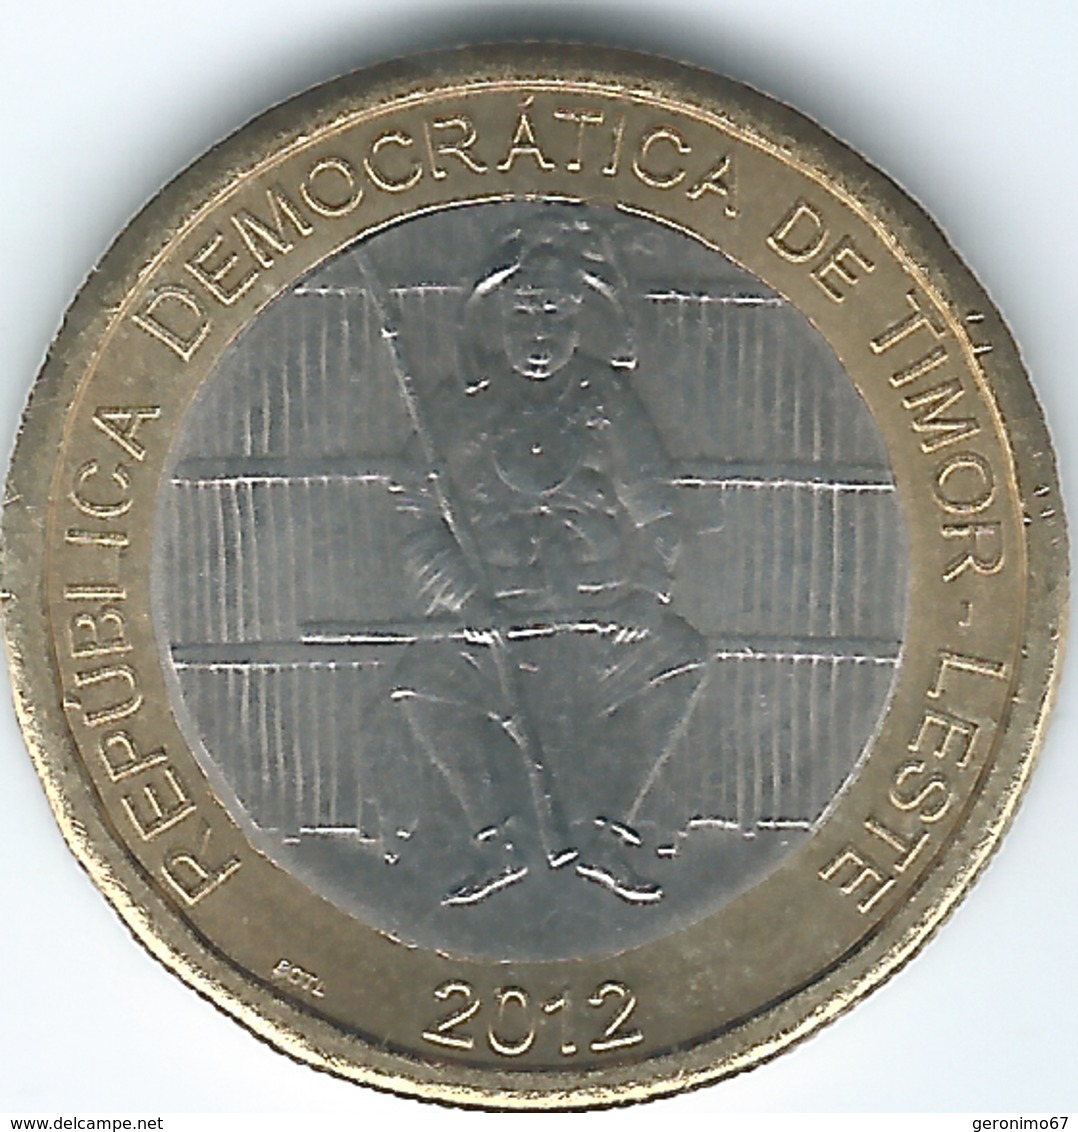 Timor Leste - 2012 - 100 Centavos - KM6 - Timor